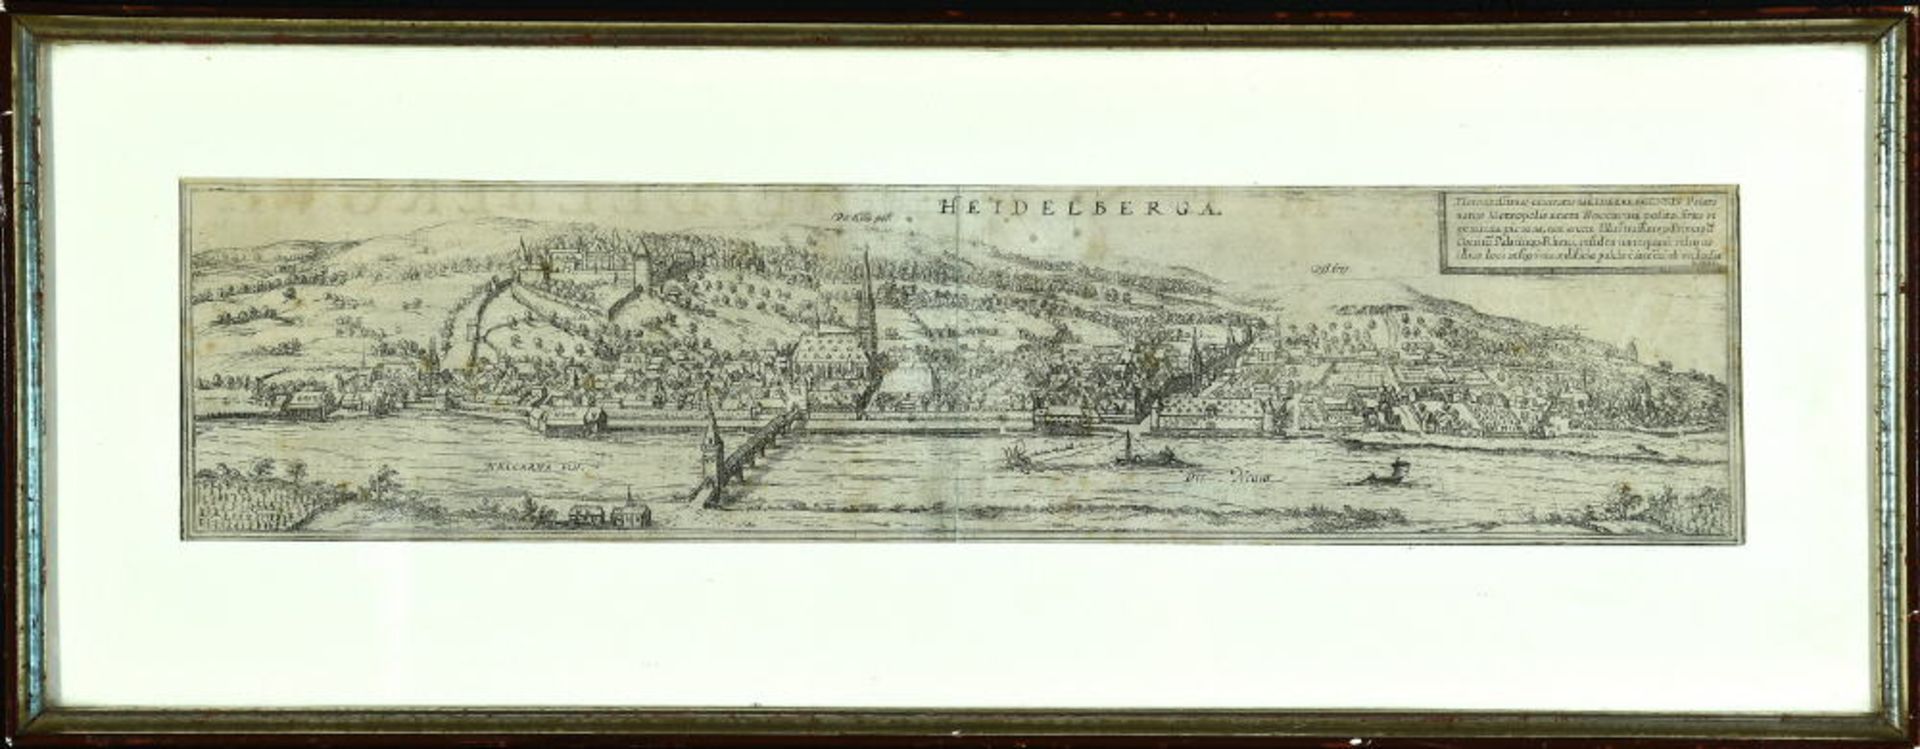 Heidelberg, GesamtansichtKupferstich, 11 x 47 cm, von Braun & Hogenberg, 16. Jh., RHeidelberg,